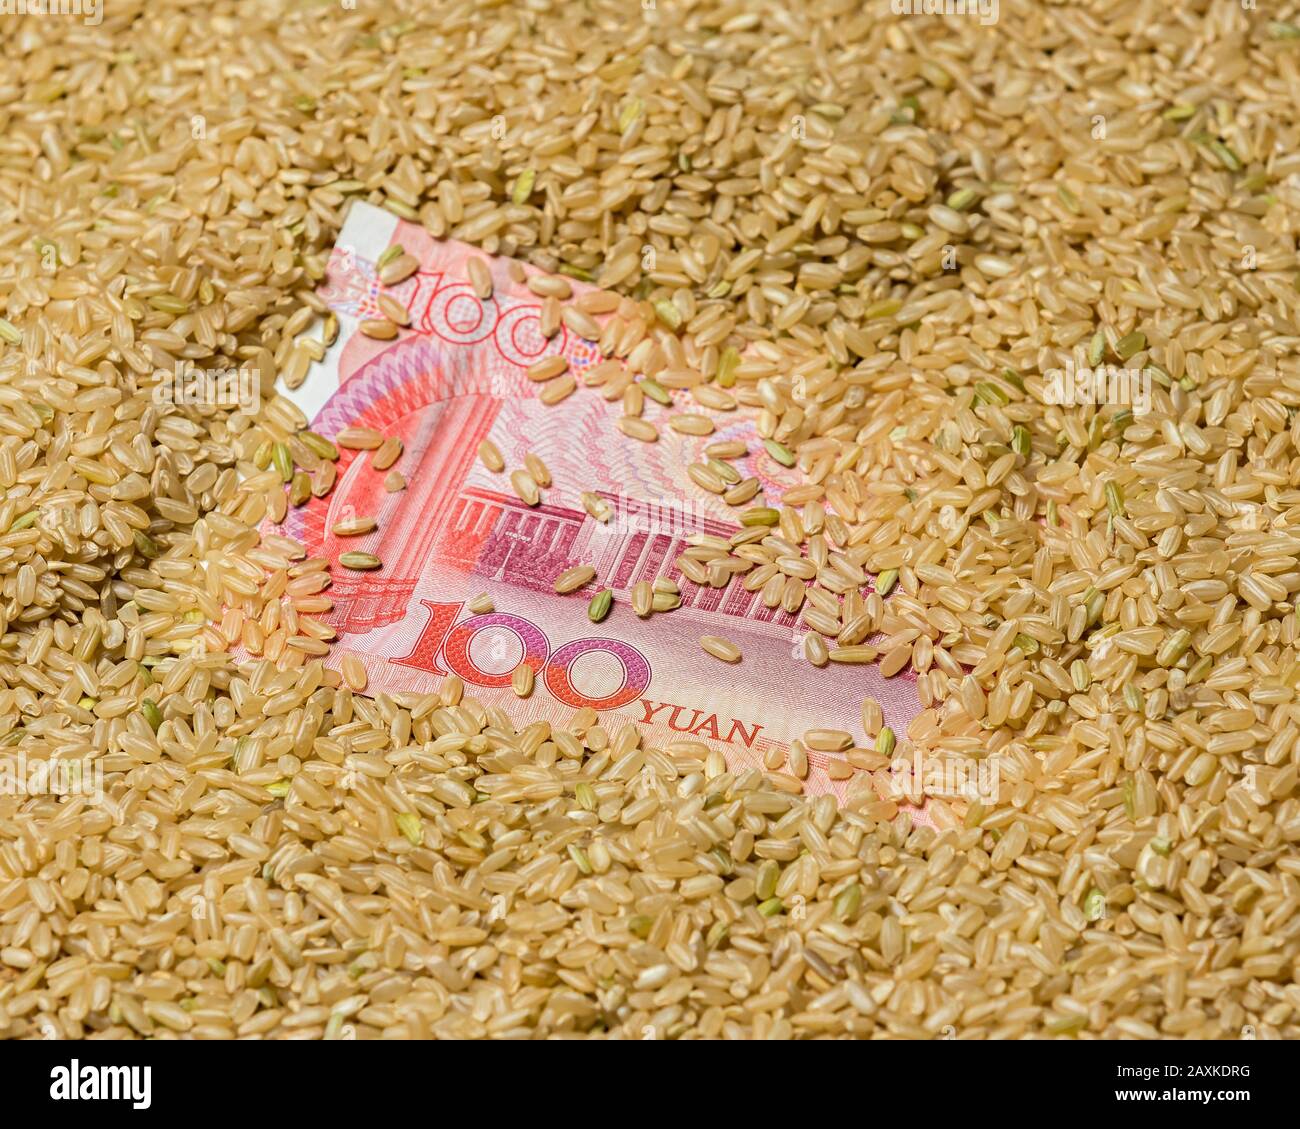 Nahaufnahme von braunem Vollkornreissamen rund um die chinesische 100 Yuan Renminbi Rechnung. Konzept der chinesischen Reisindustrie, des Handels und der Marktpreise Stockfoto